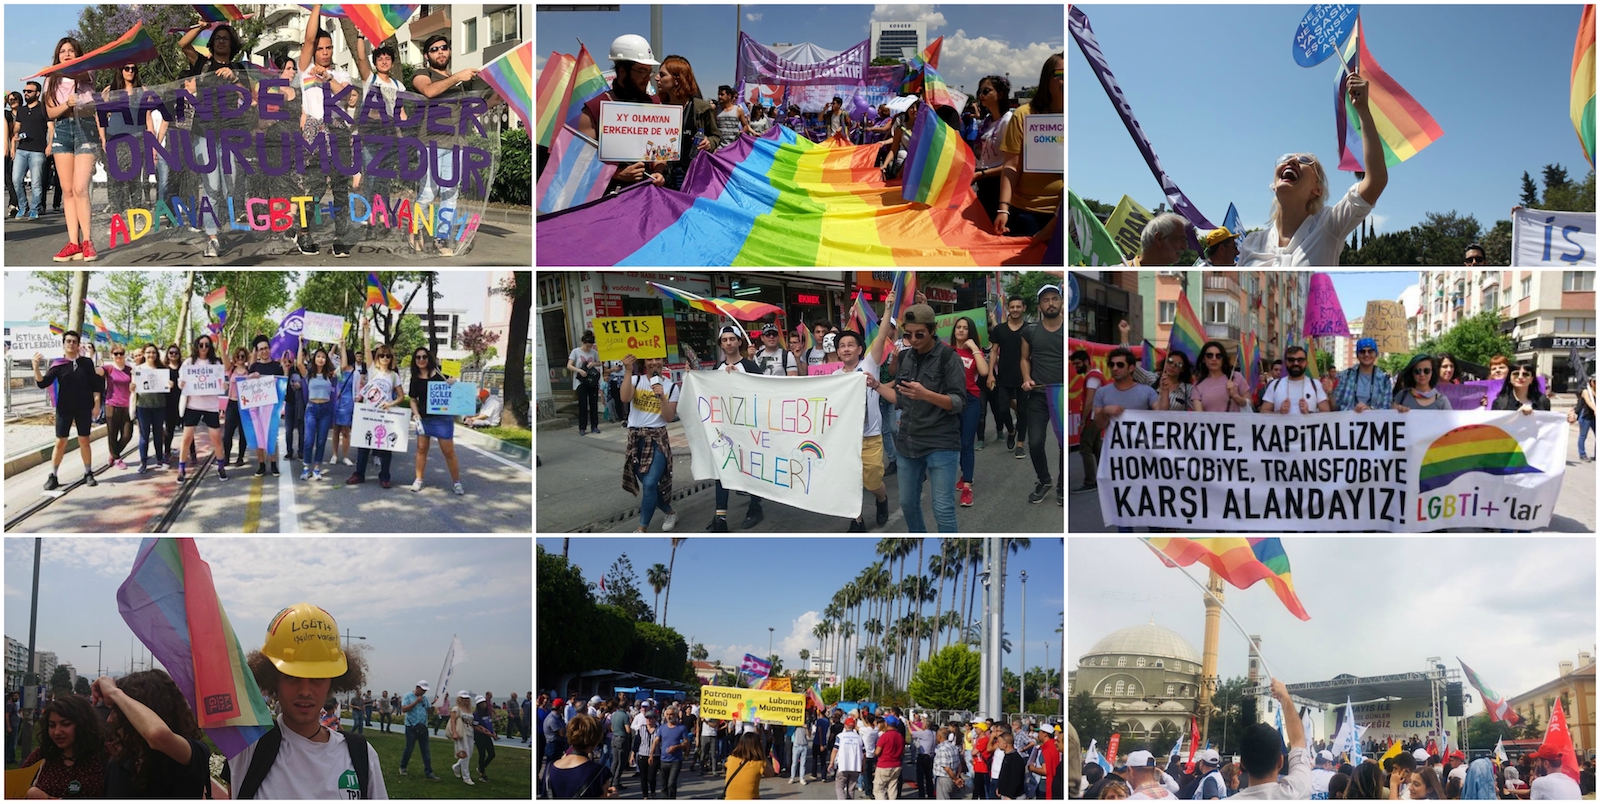 Rainbows of May 1 Kaos GL - News Portal for LGBTI+